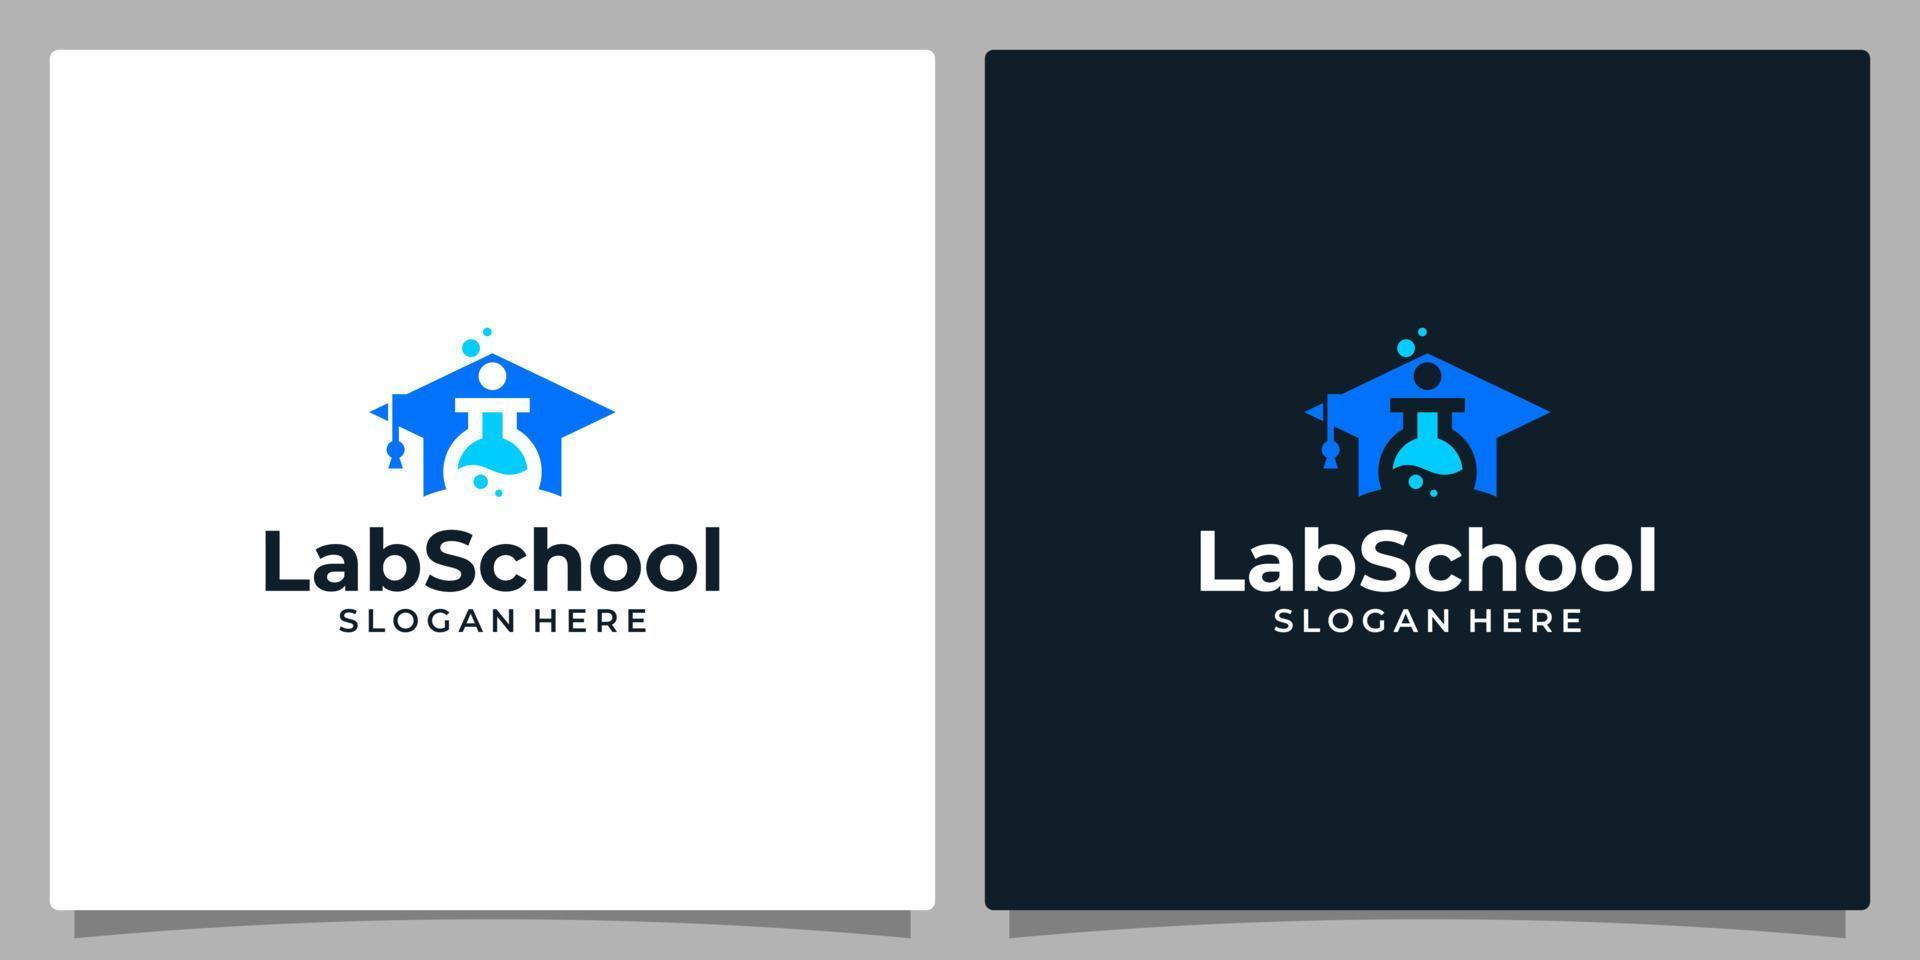 College, Graduate cap, Campus, Education logo design and lab logo vector illustration graphic design.